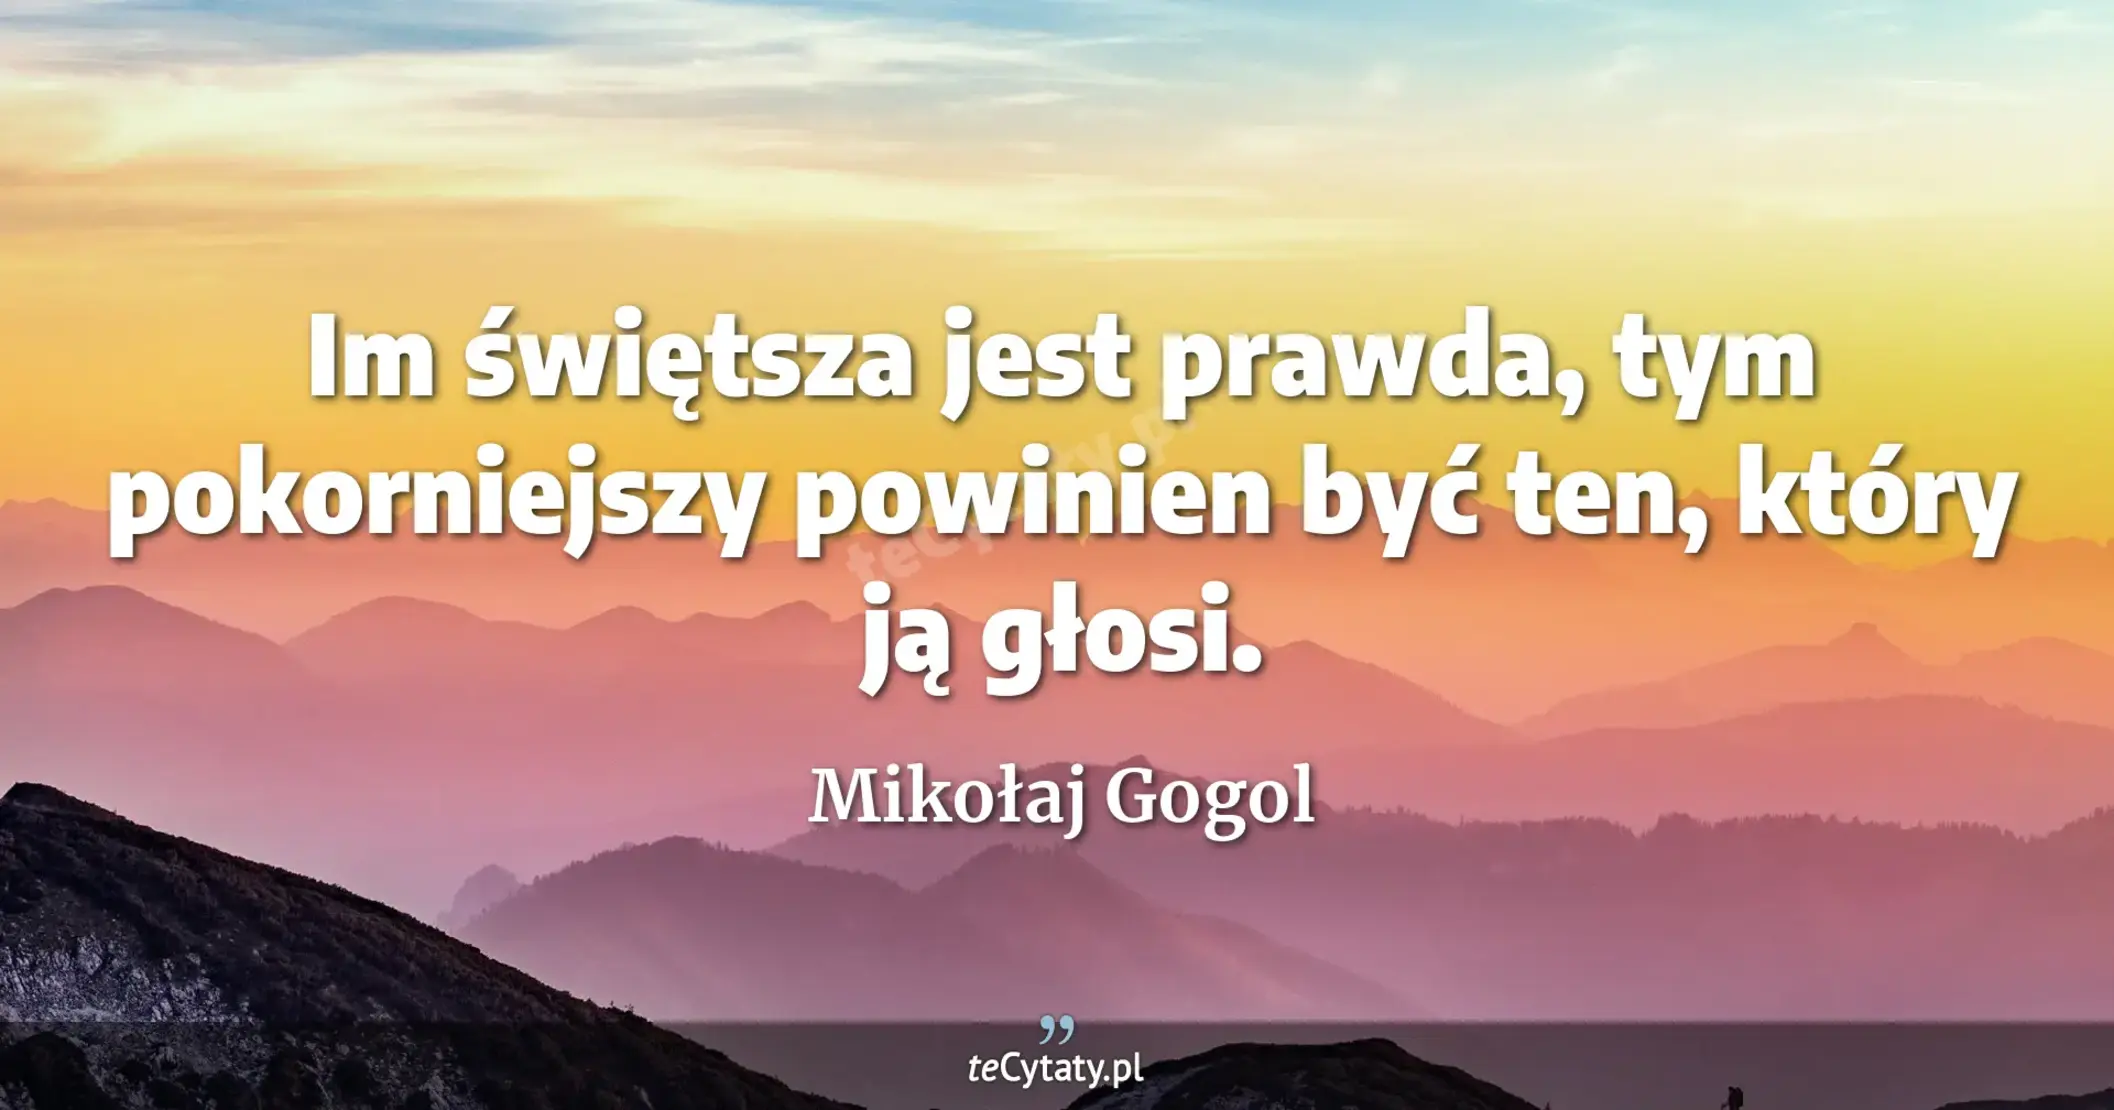 Im świętsza jest prawda, tym pokorniejszy powinien być ten, który ją głosi. - Mikołaj Gogol